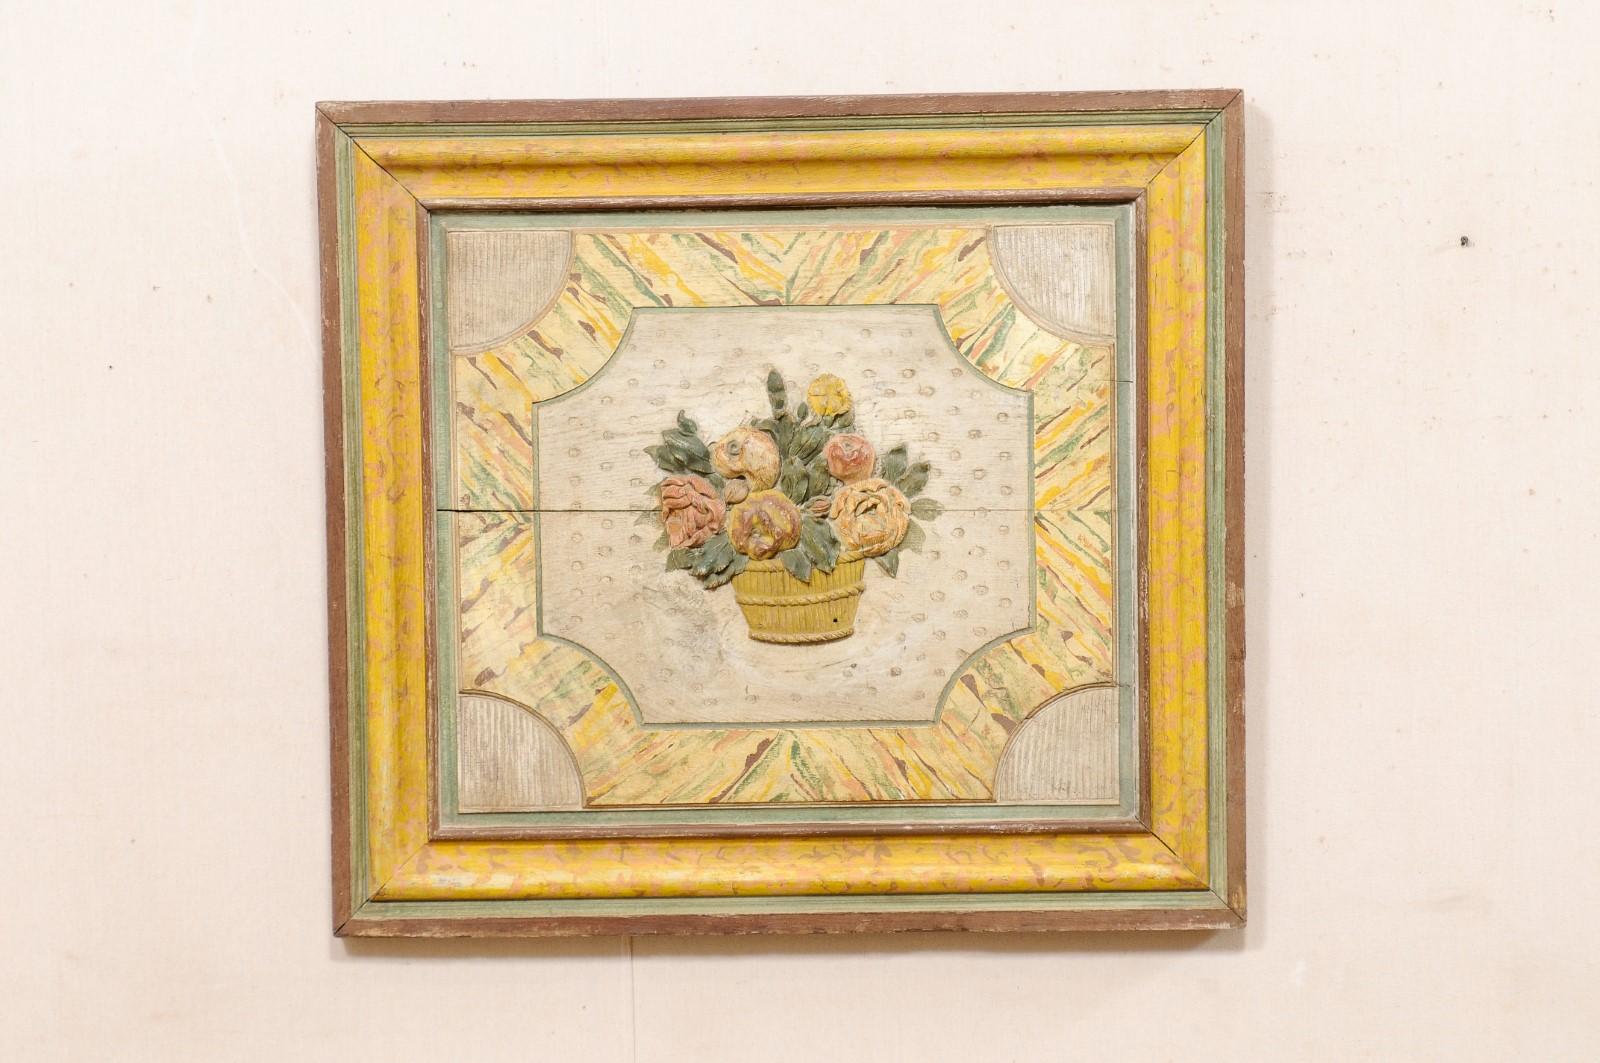 Une plaque en bois sculpté de bouquet floral français, avec sa peinture d'origine, du 18ème siècle. Cette décoration murale ancienne de France, de forme presque carrée, présente un seau sculpté avec un bouquet floral, avec une parure texturée et